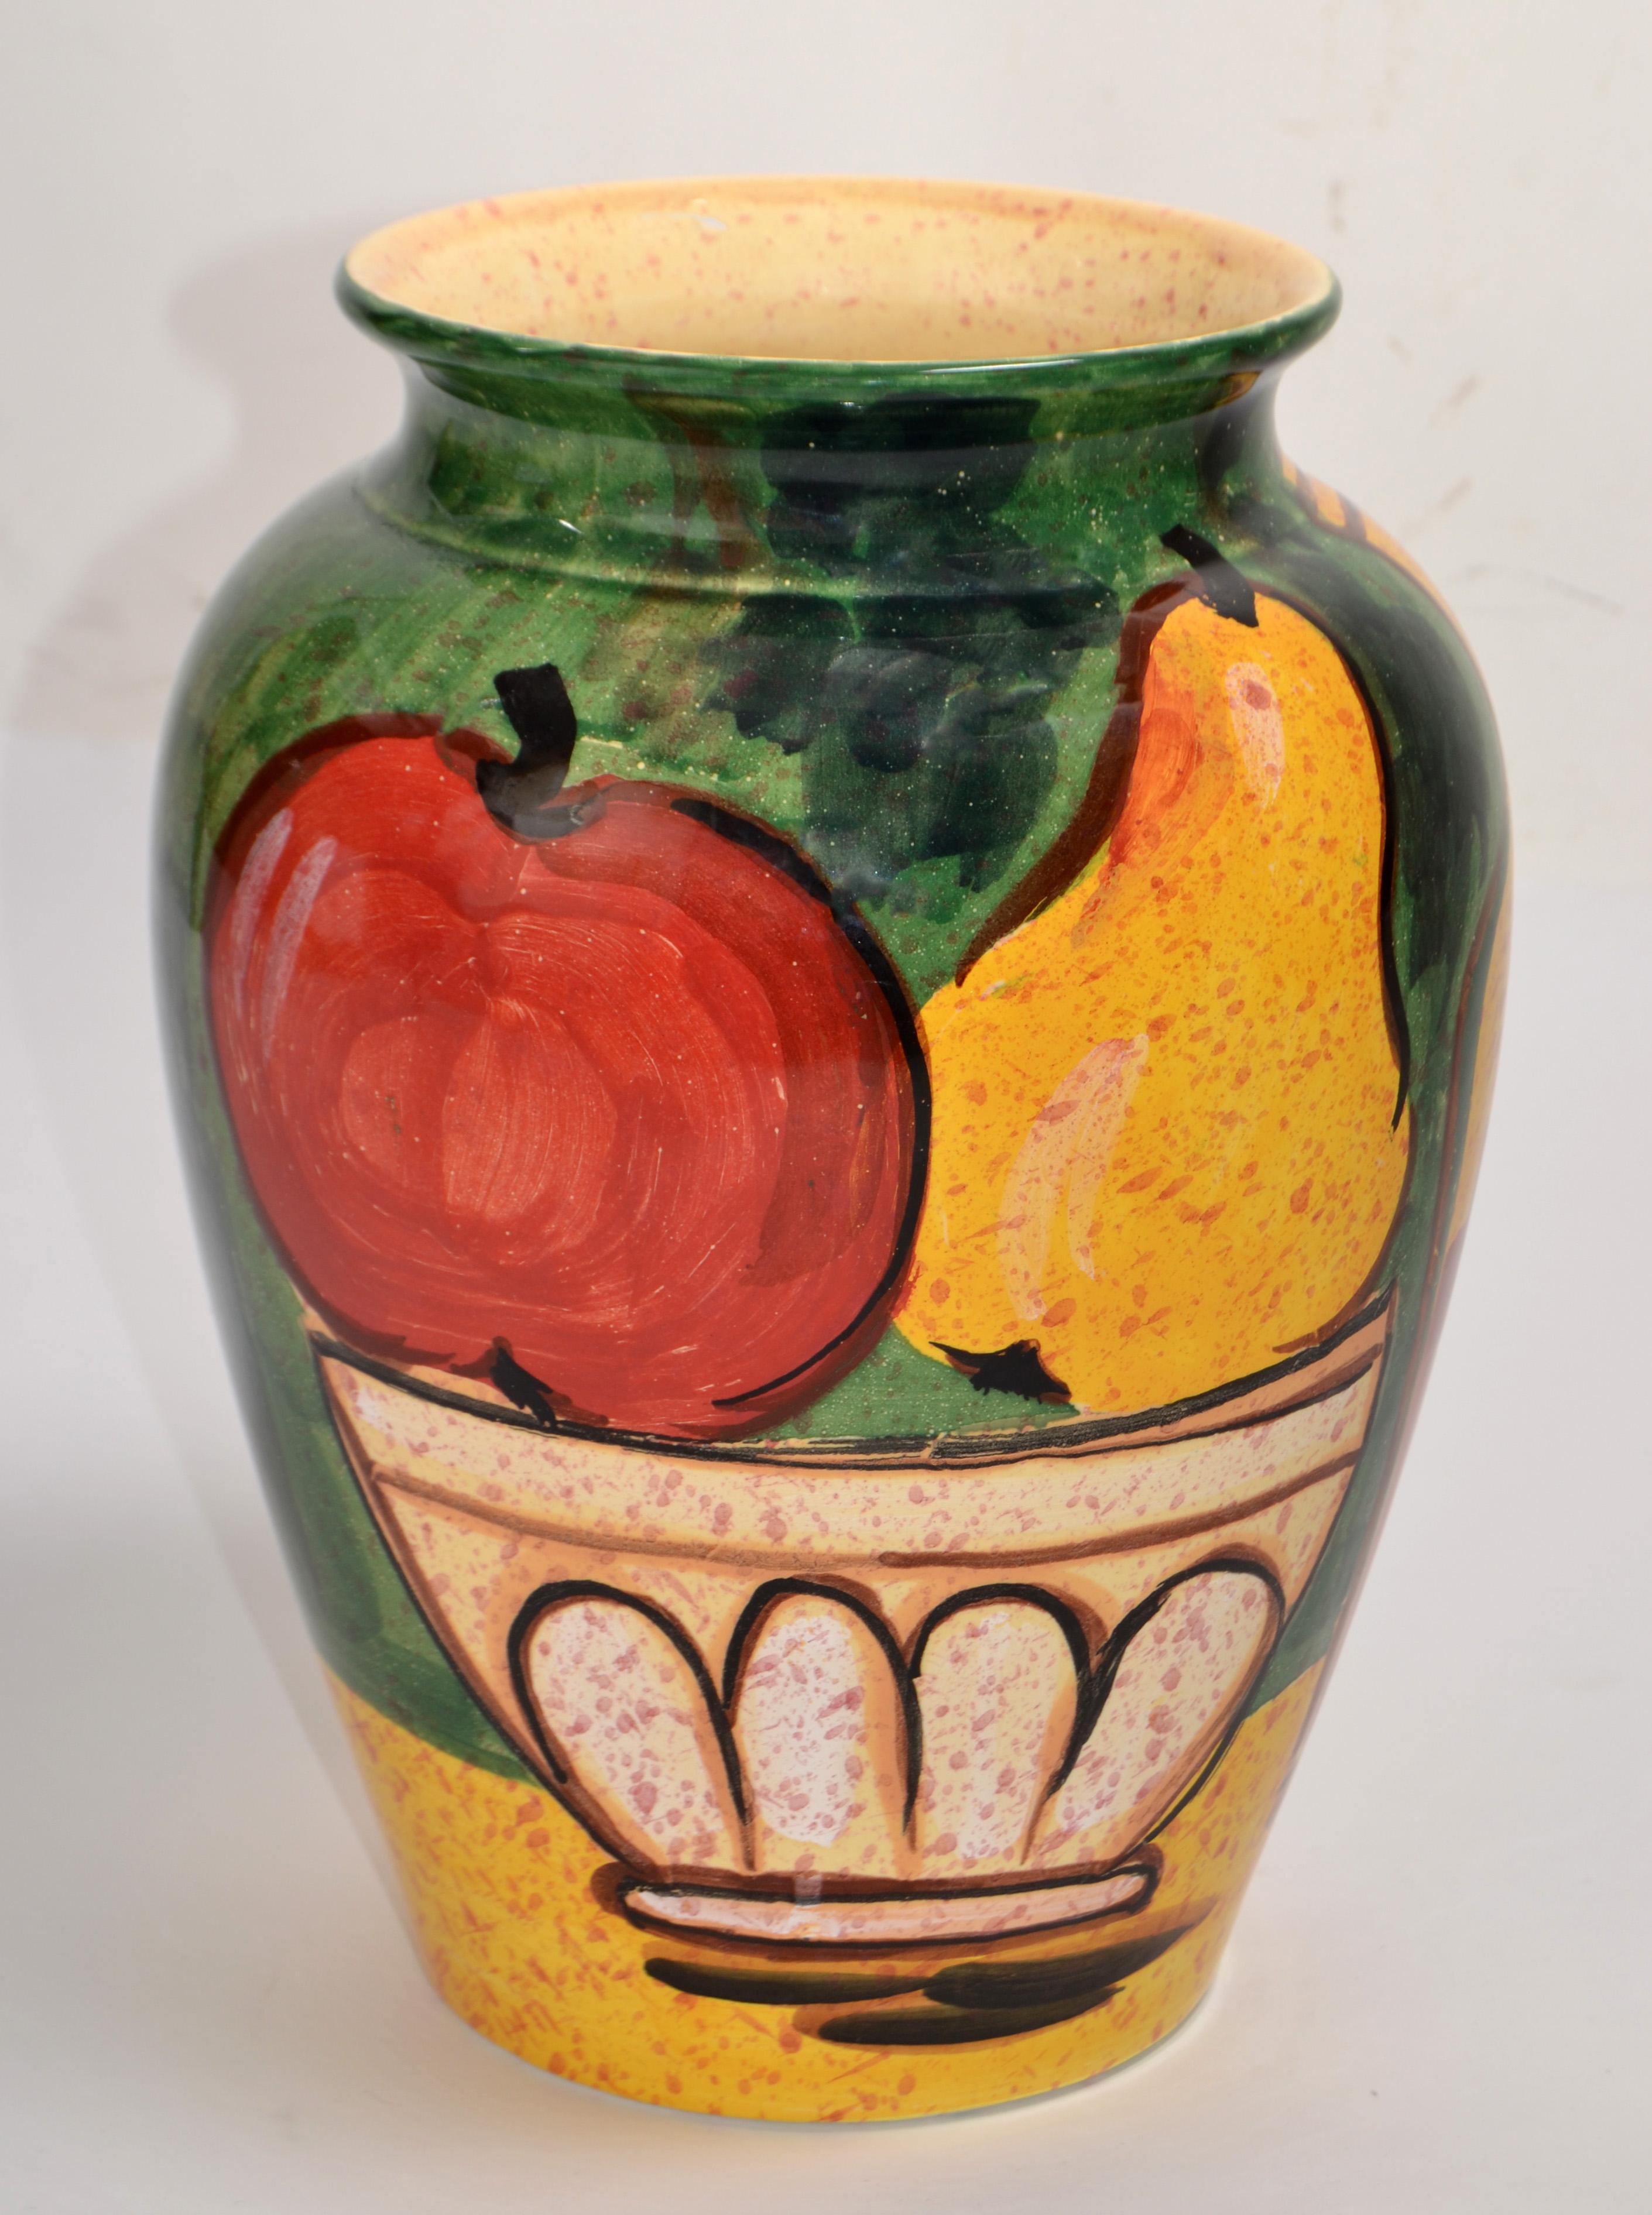 Vase vintage italien en céramique peint à la main, nature morte, fruits dans un panier, des années 1980, par Bellini Studio.
Représentation d'une pomme et d'une poire dans un panier, très colorée et vernissée.
Marque du fabricant à la base, Bellini